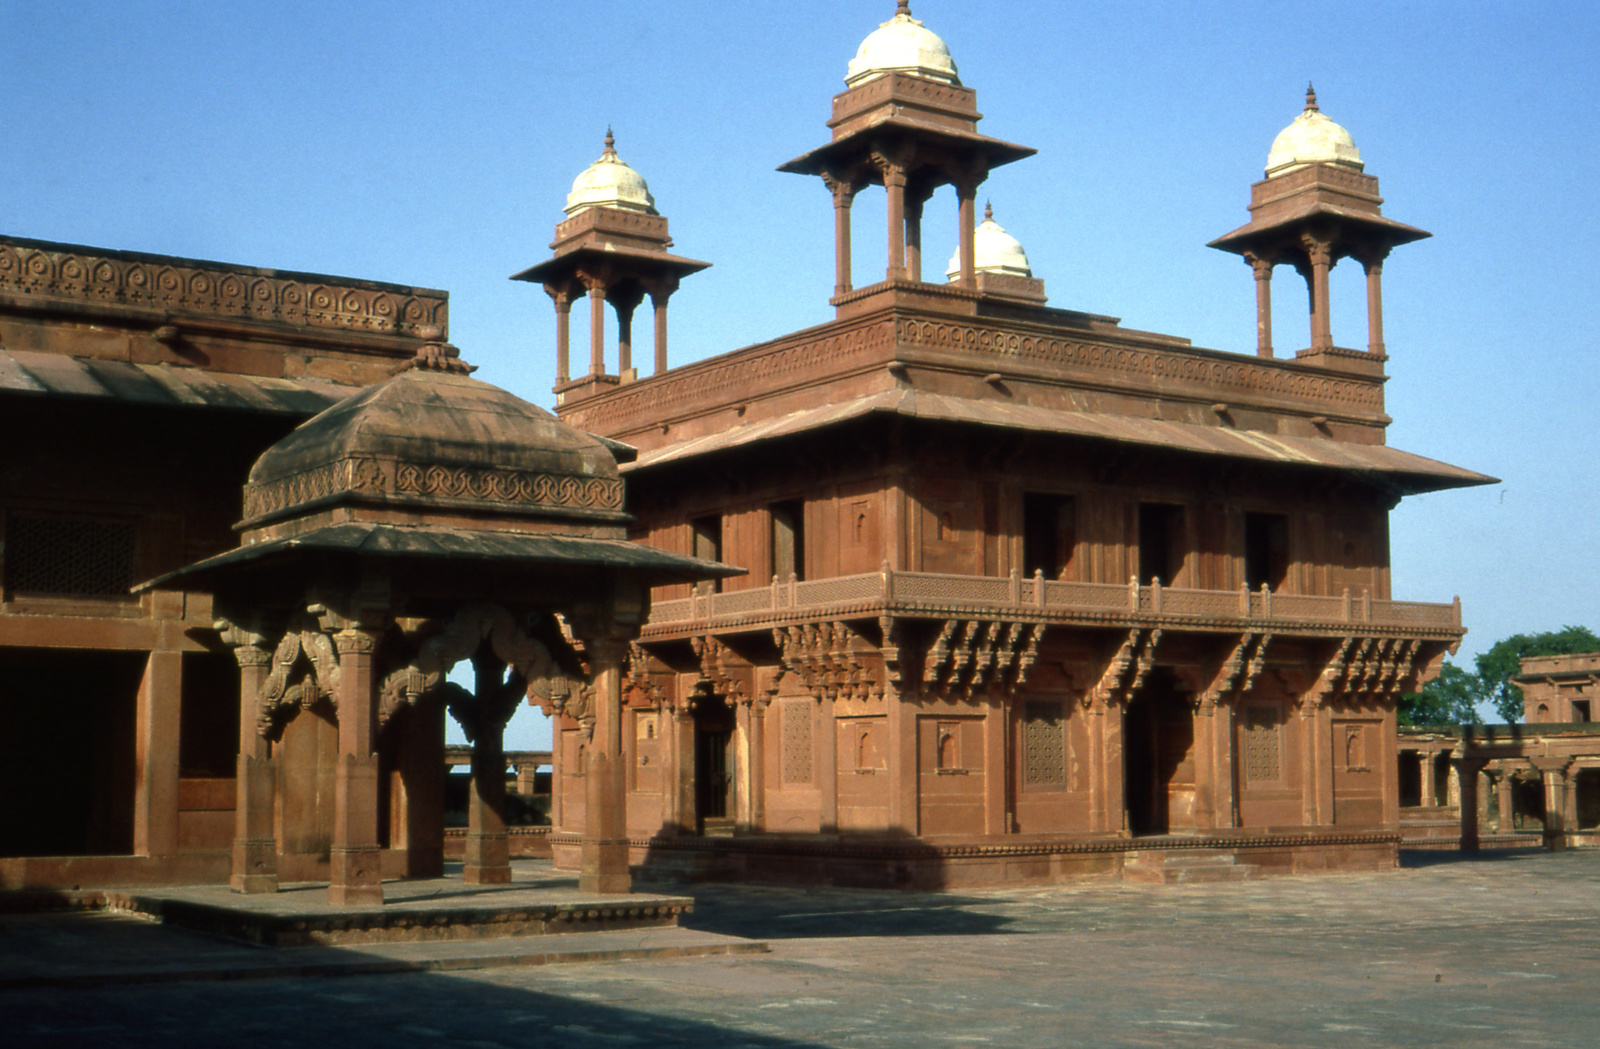 Fatehpur Szikri